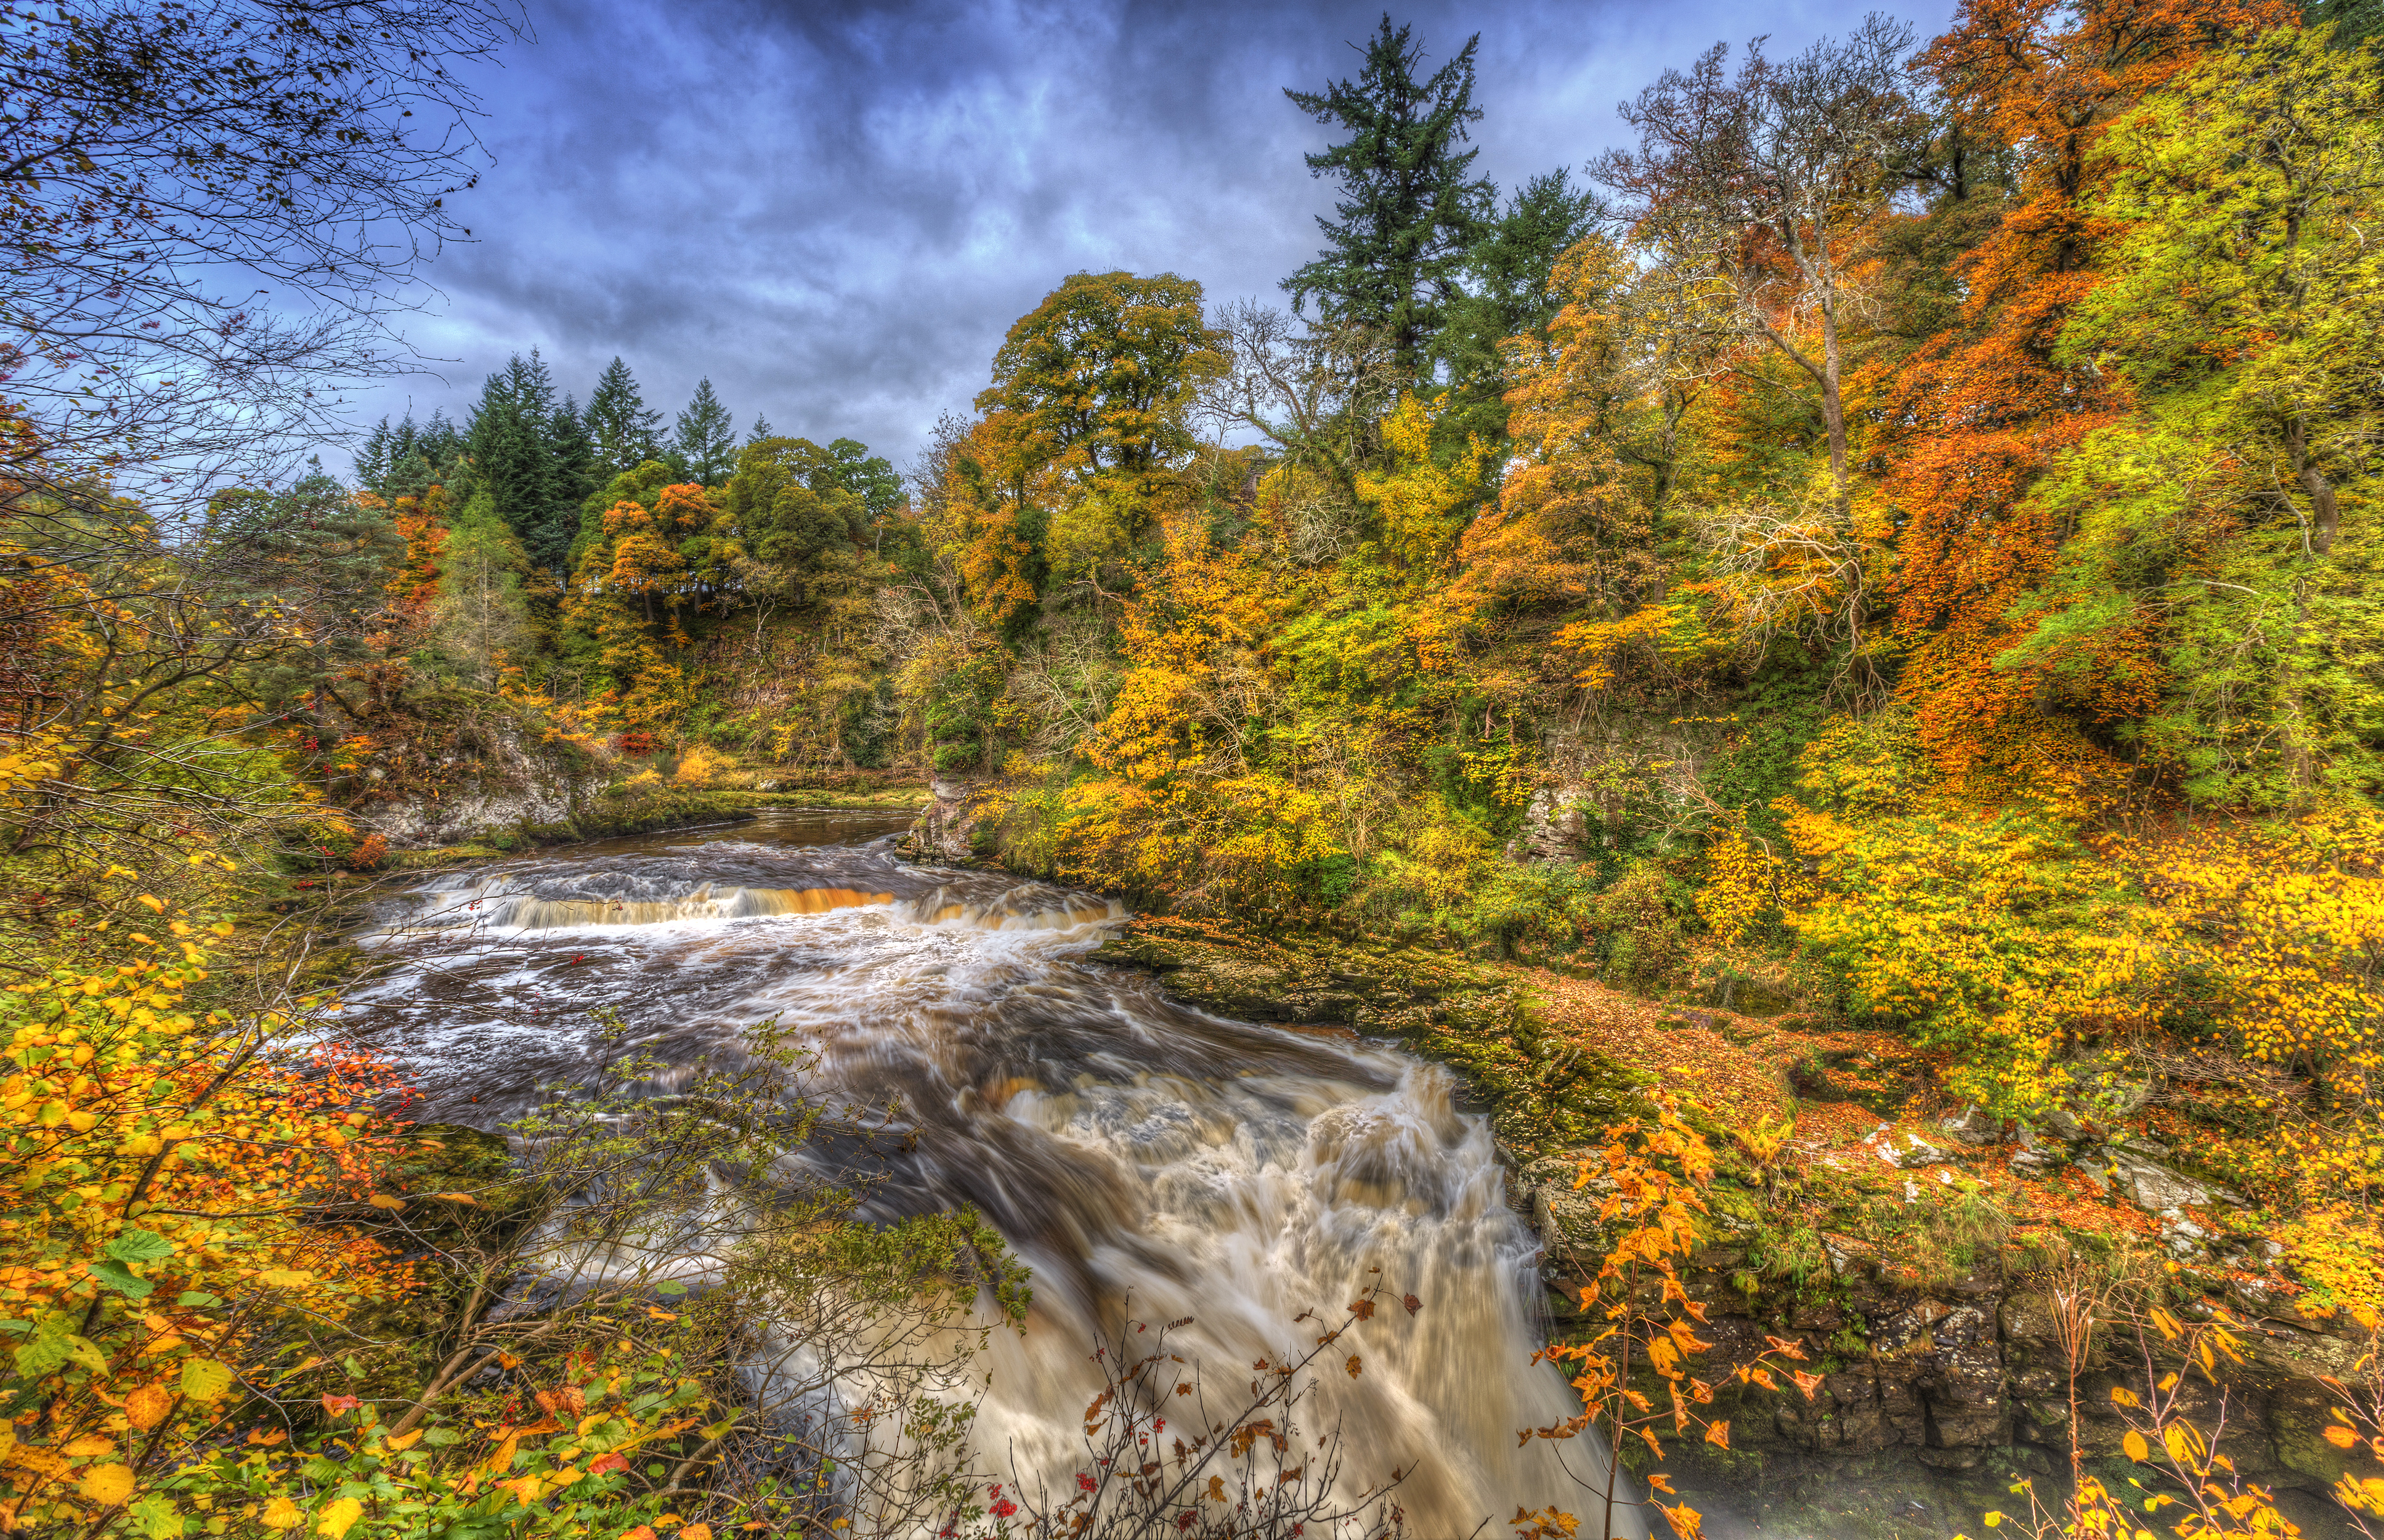 Скачать картинку Осень, Водопад, Лес, Дерево, Земля, Hdr, Фотографии в телефон бесплатно.